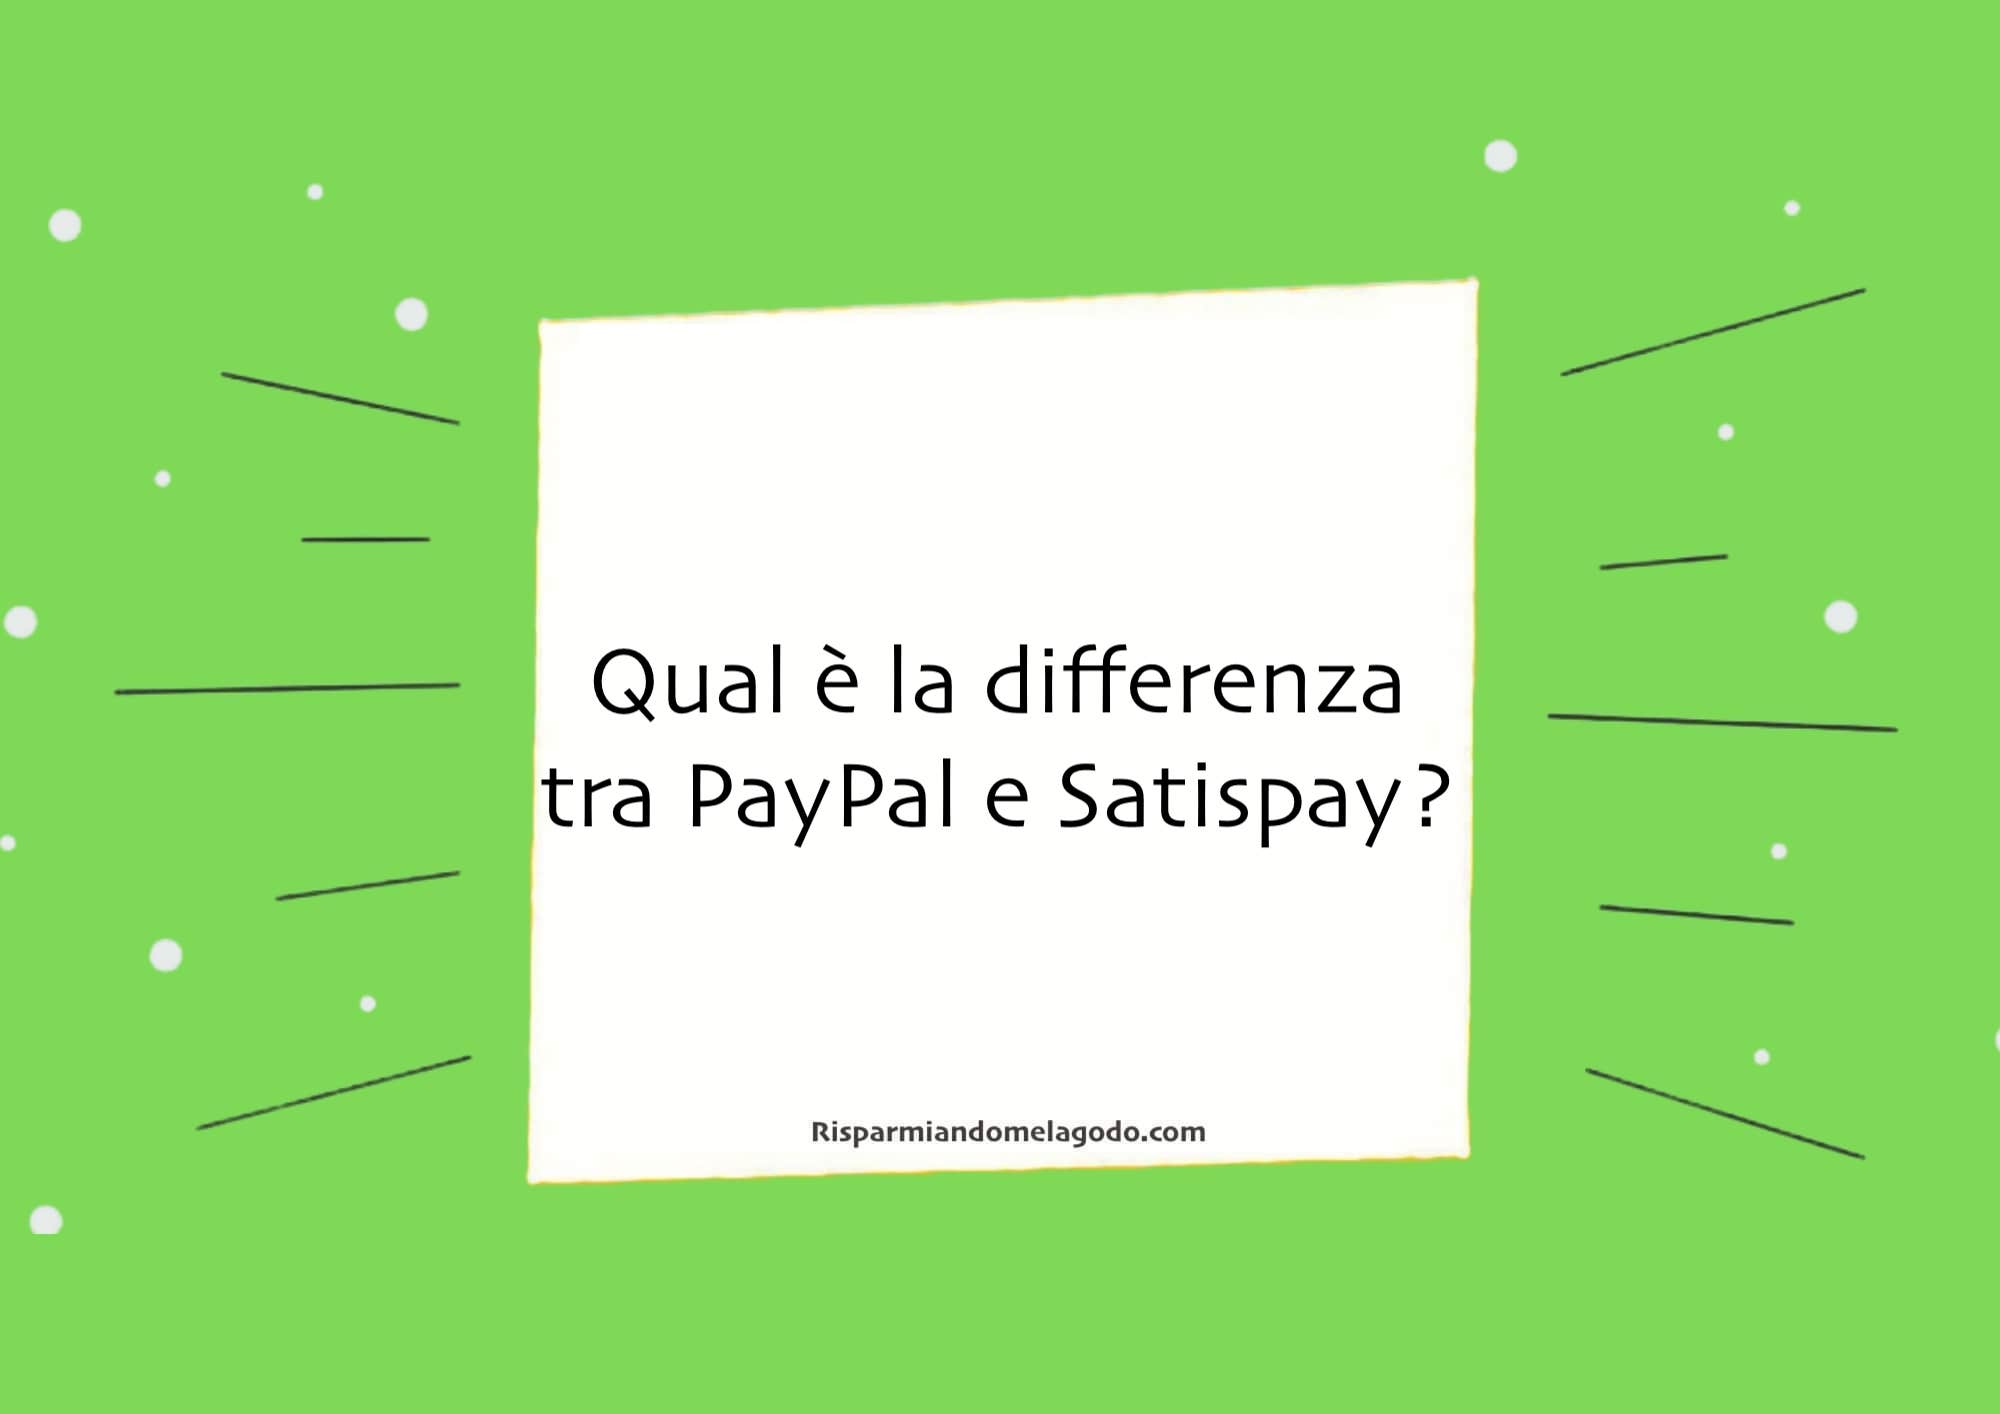 Qual è la differenza tra PayPal e Satispay?